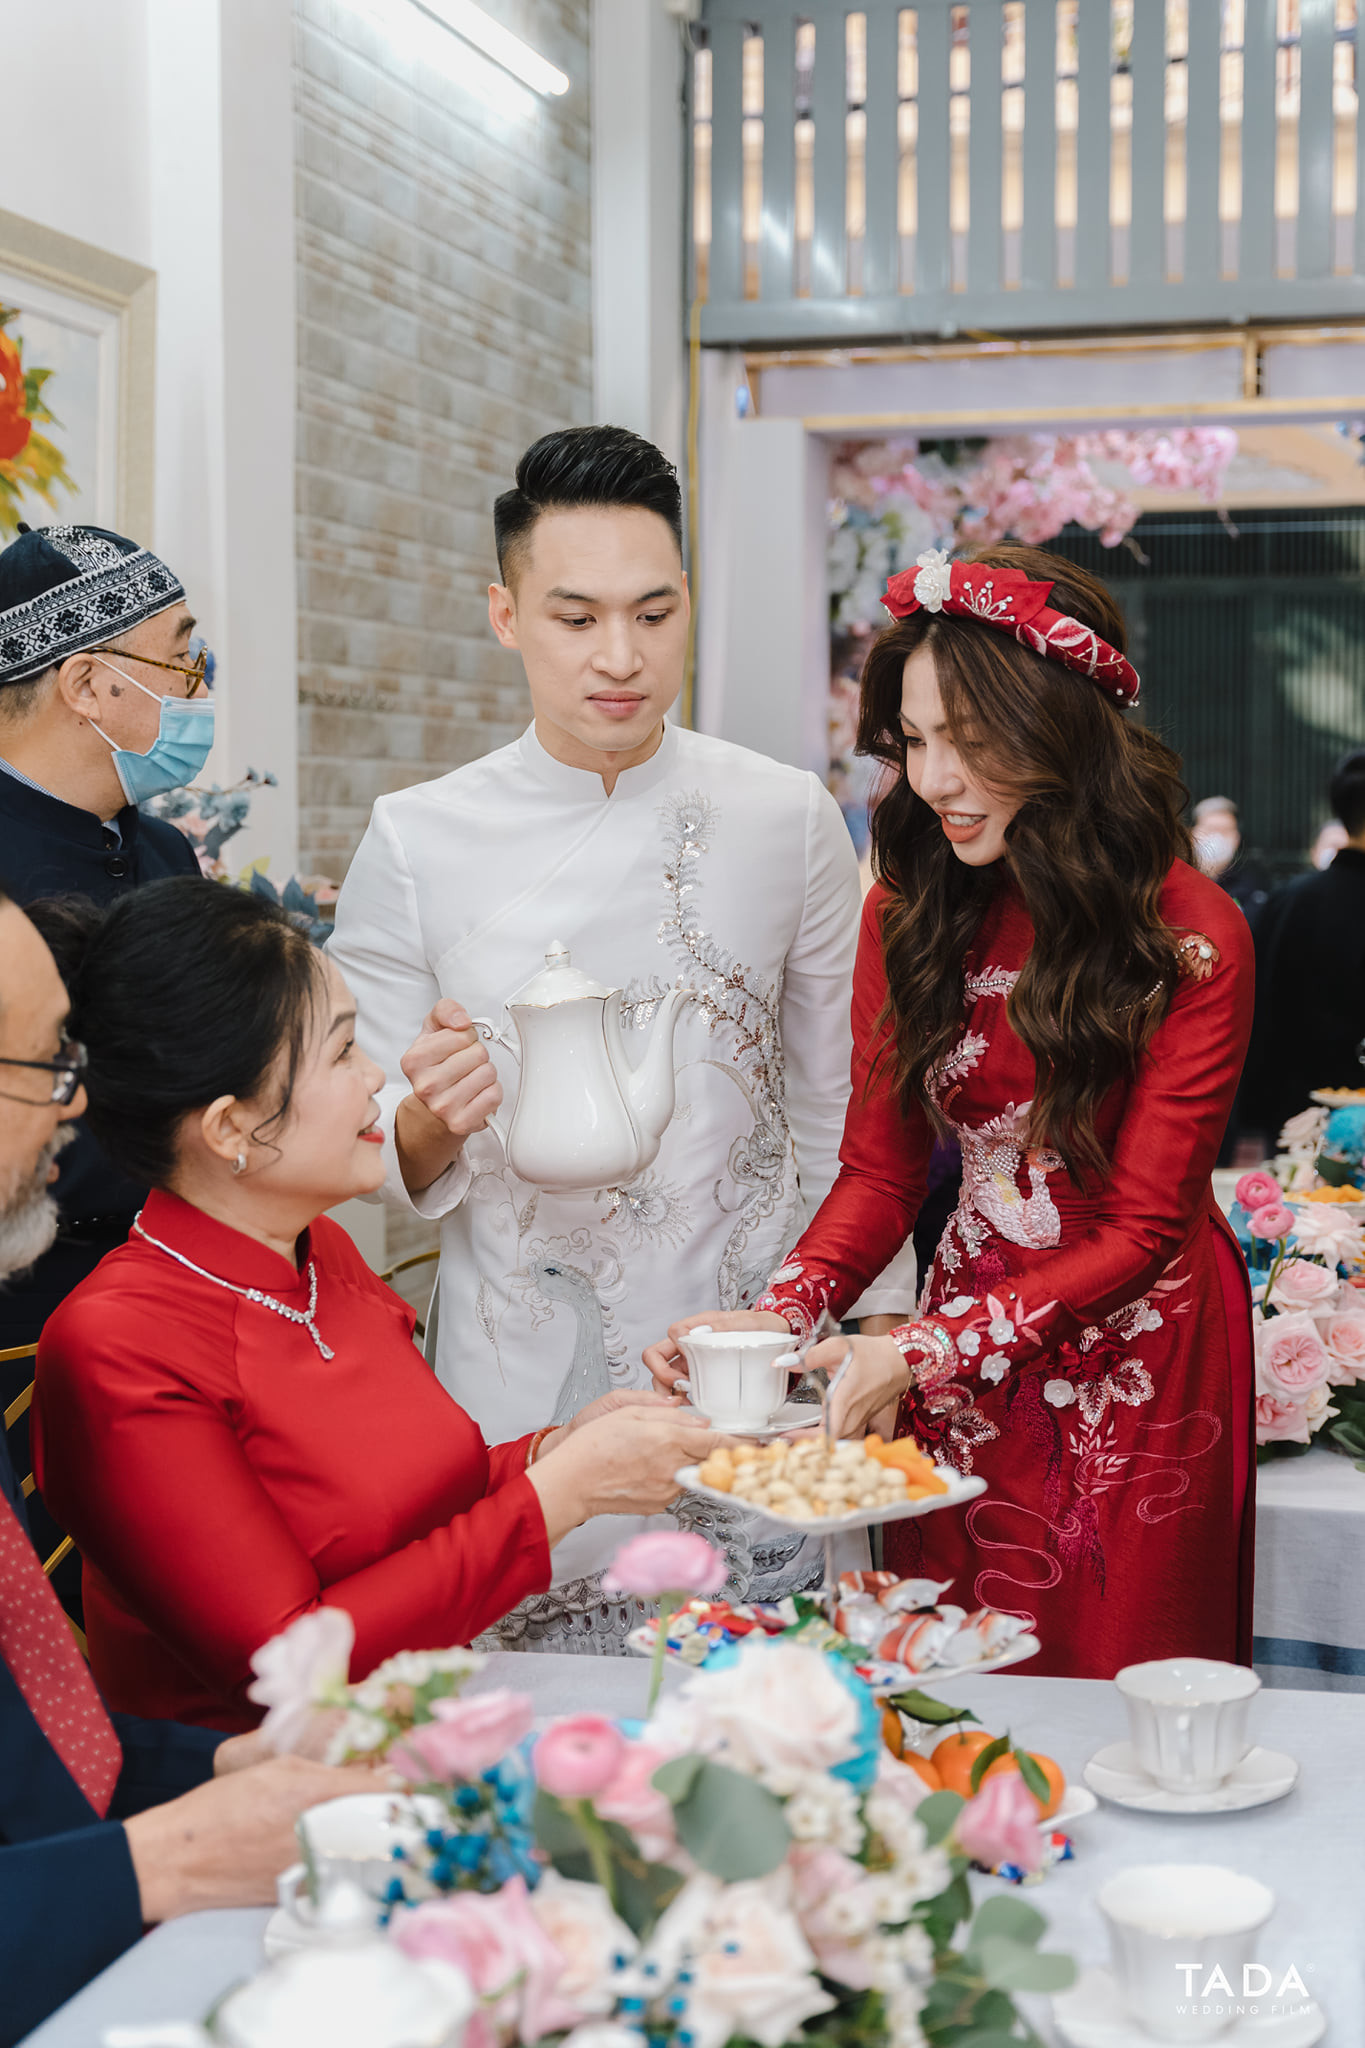 PhiLinh Wedding - Xuân Nhâm Dần 2022 Gộp hai lễ ăn hỏi và đón dâu cùng một ngày ở nhà gái